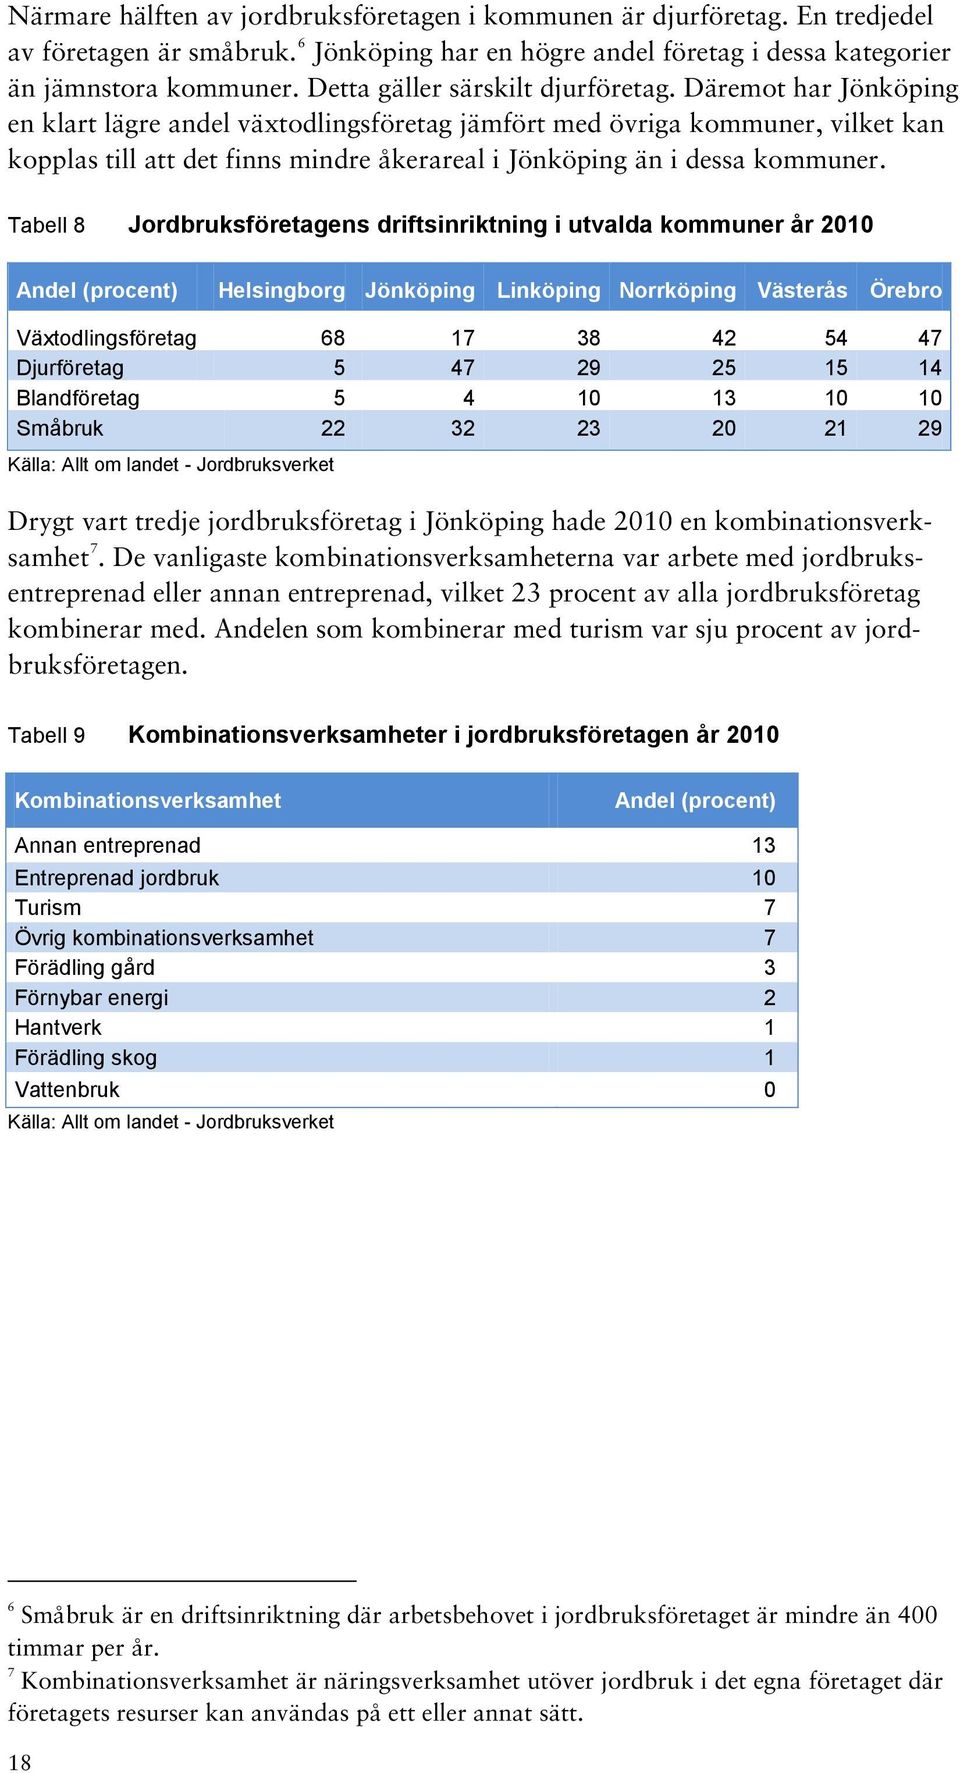 Däremot har Jönköping en klart lägre andel växtodlingsföretag jämfört med övriga kommuner, vilket kan kopplas till att det finns mindre åkerareal i Jönköping än i dessa kommuner.